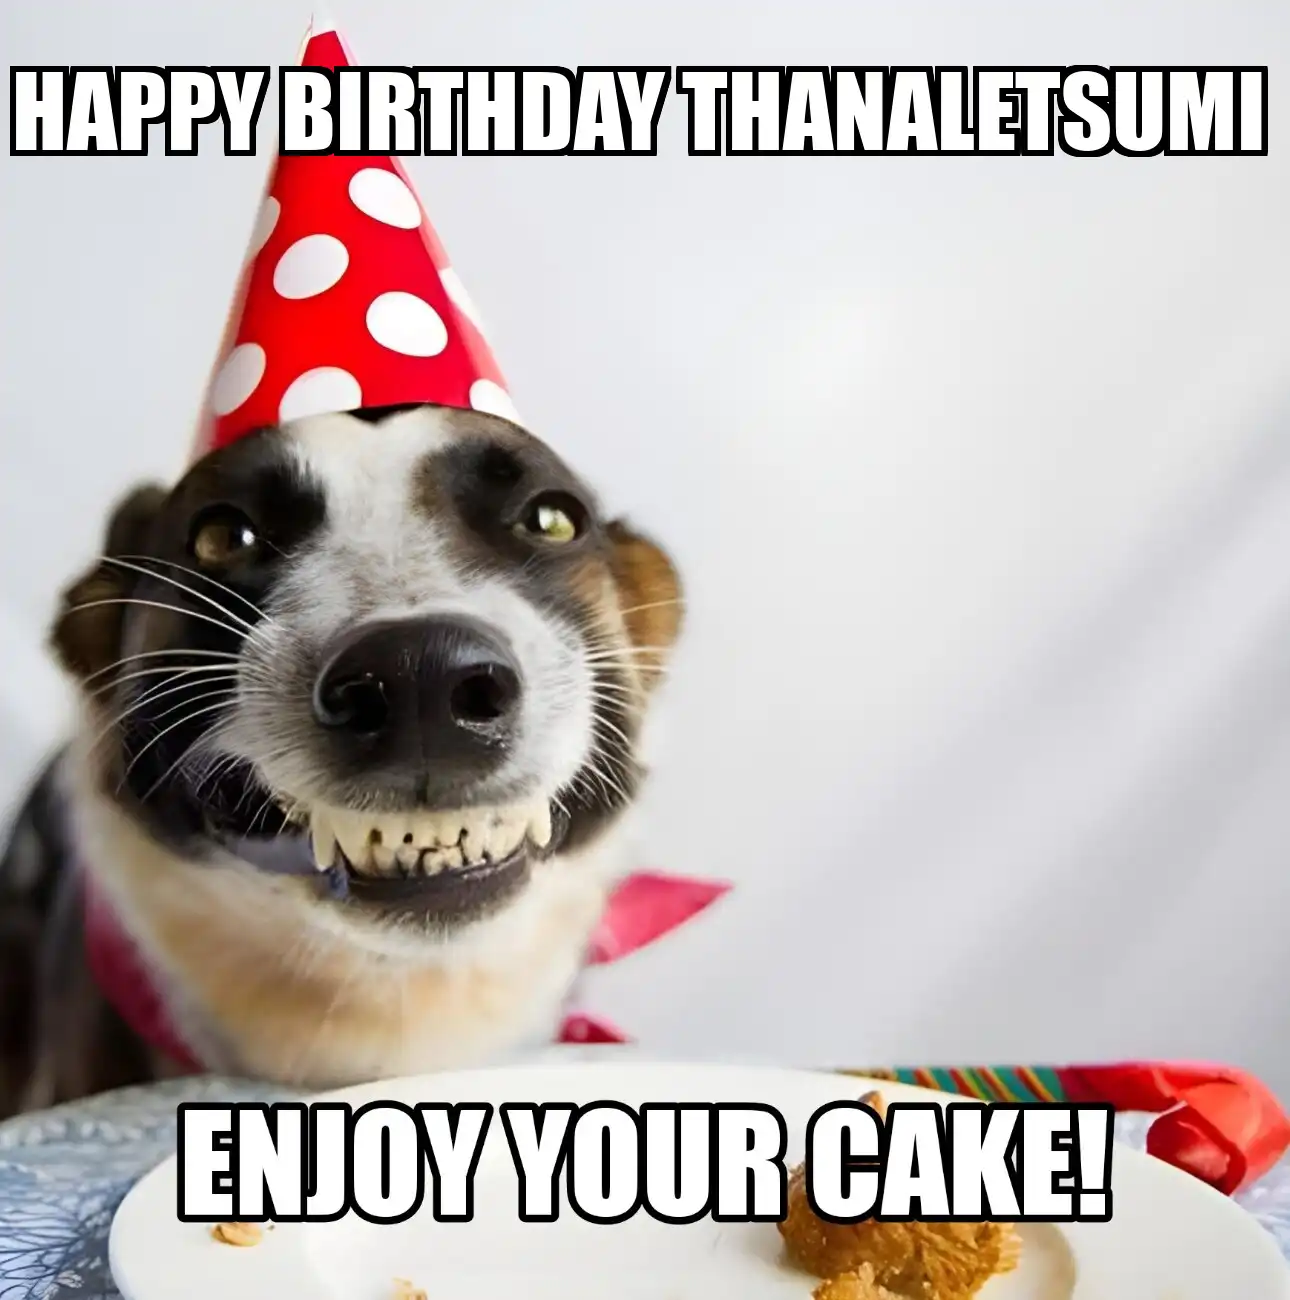 Happy Birthday Thanaletsumi Enjoy Your Cake Dog Meme